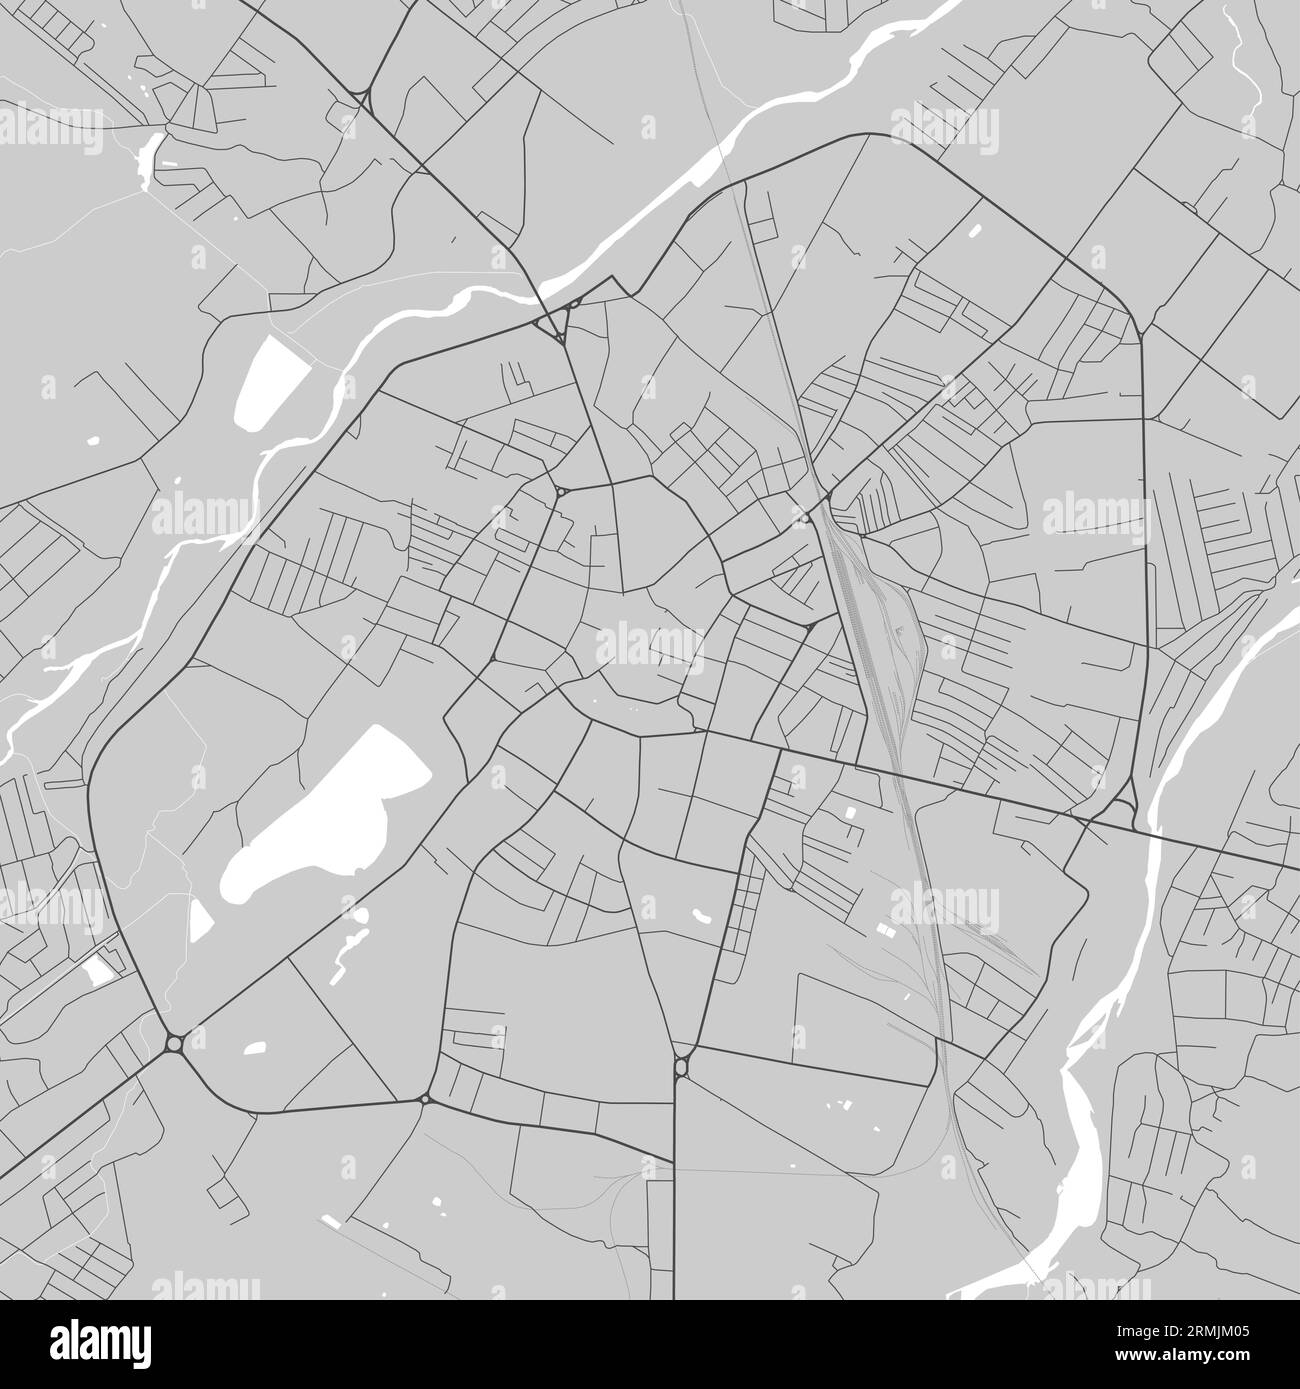 Carte de Ivano-Frankivsk ville, Ukraine. Affiche urbaine en noir et blanc. Image de la carte routière avec vue de la zone urbaine. Illustration de Vecteur